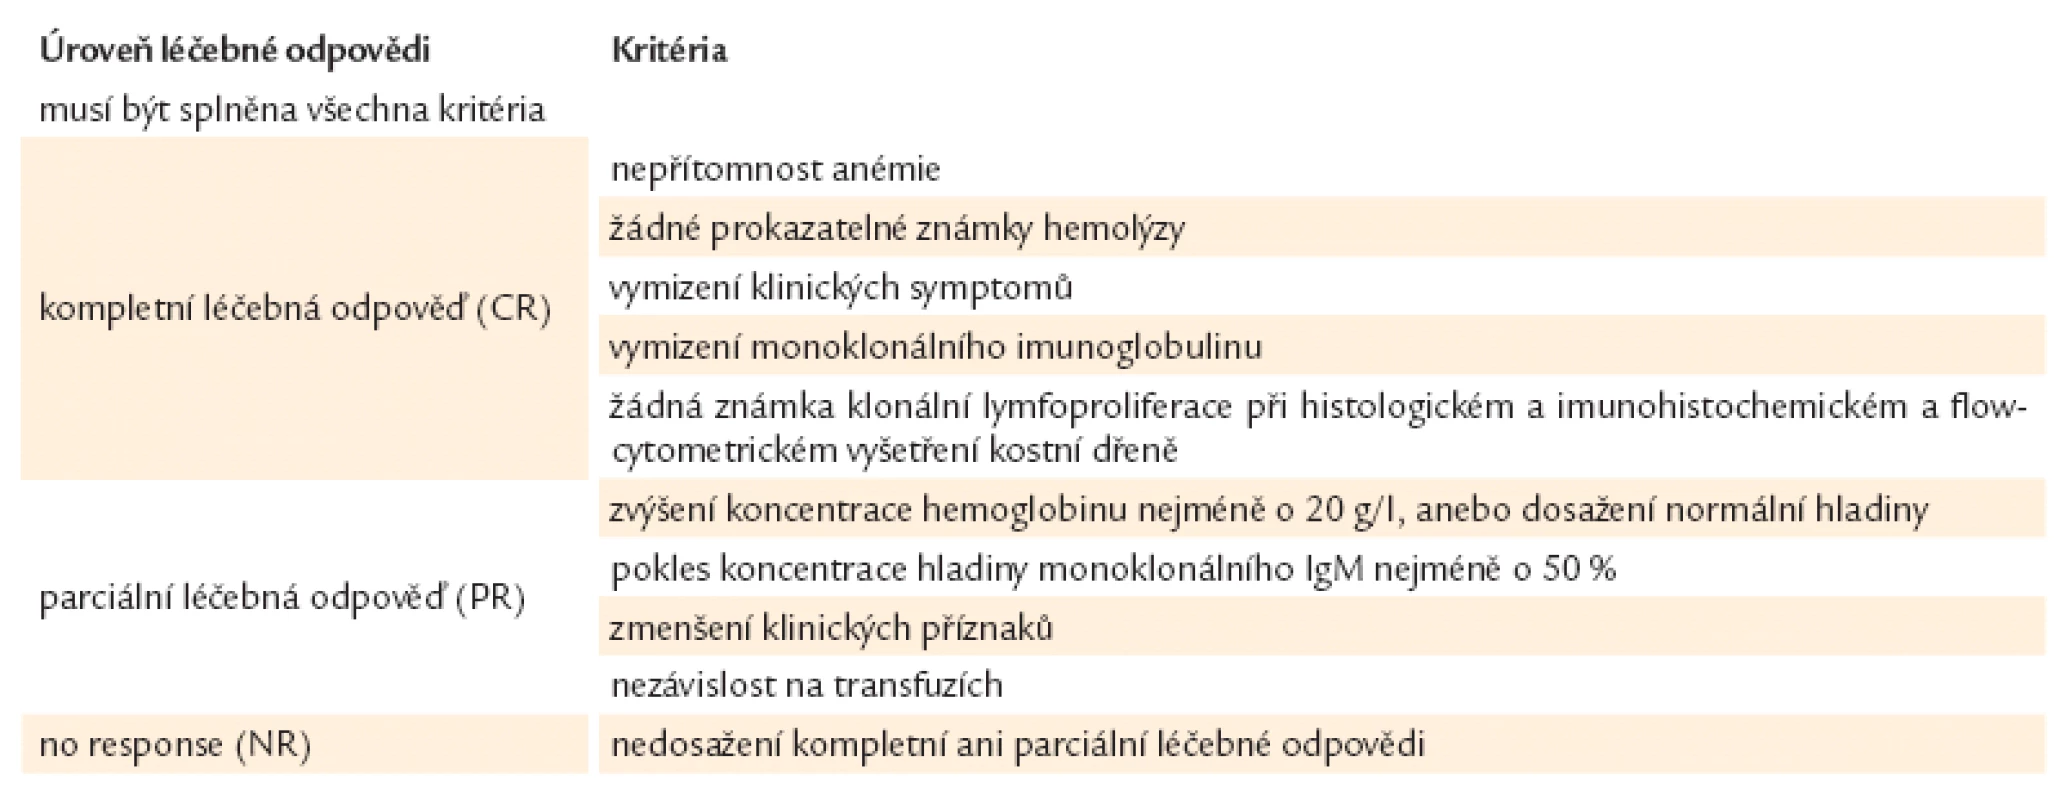 Hodnocení léčebných odpovědí u pacientů s nemocí chladových aglutininů dle Berentsena et al [5].